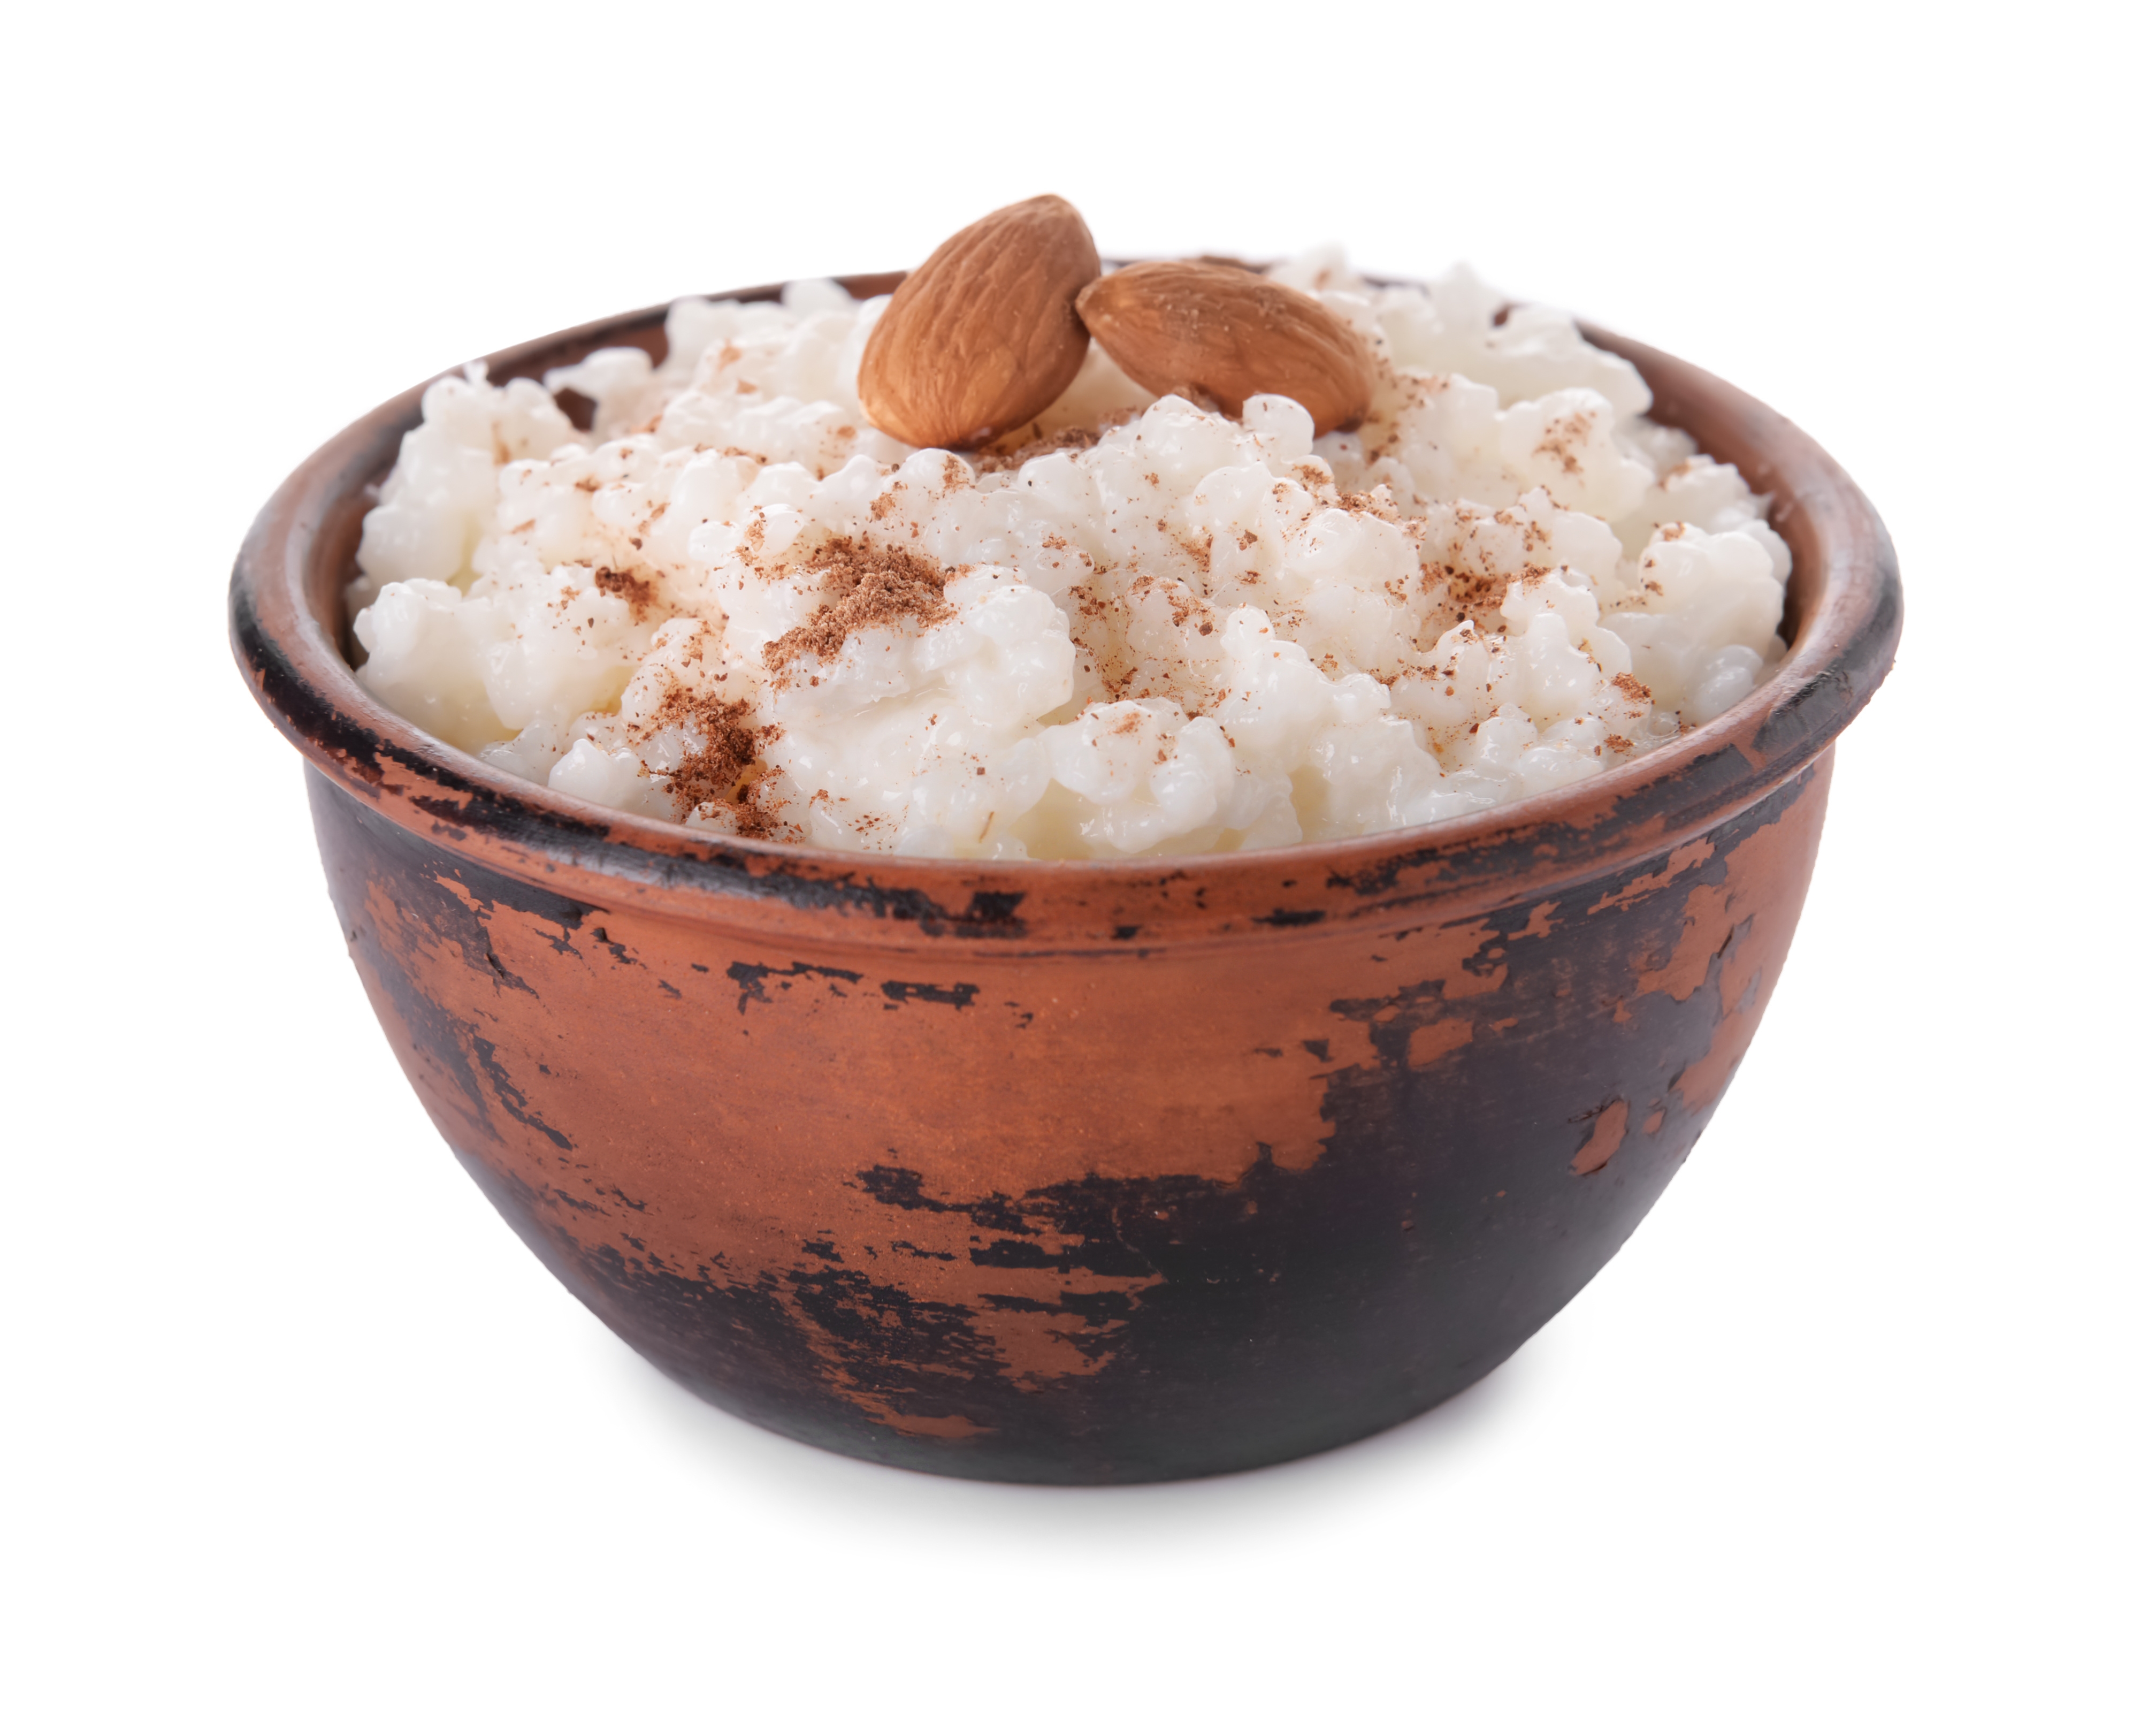 Suomiškas ryžių pudingas (riisipuuro)